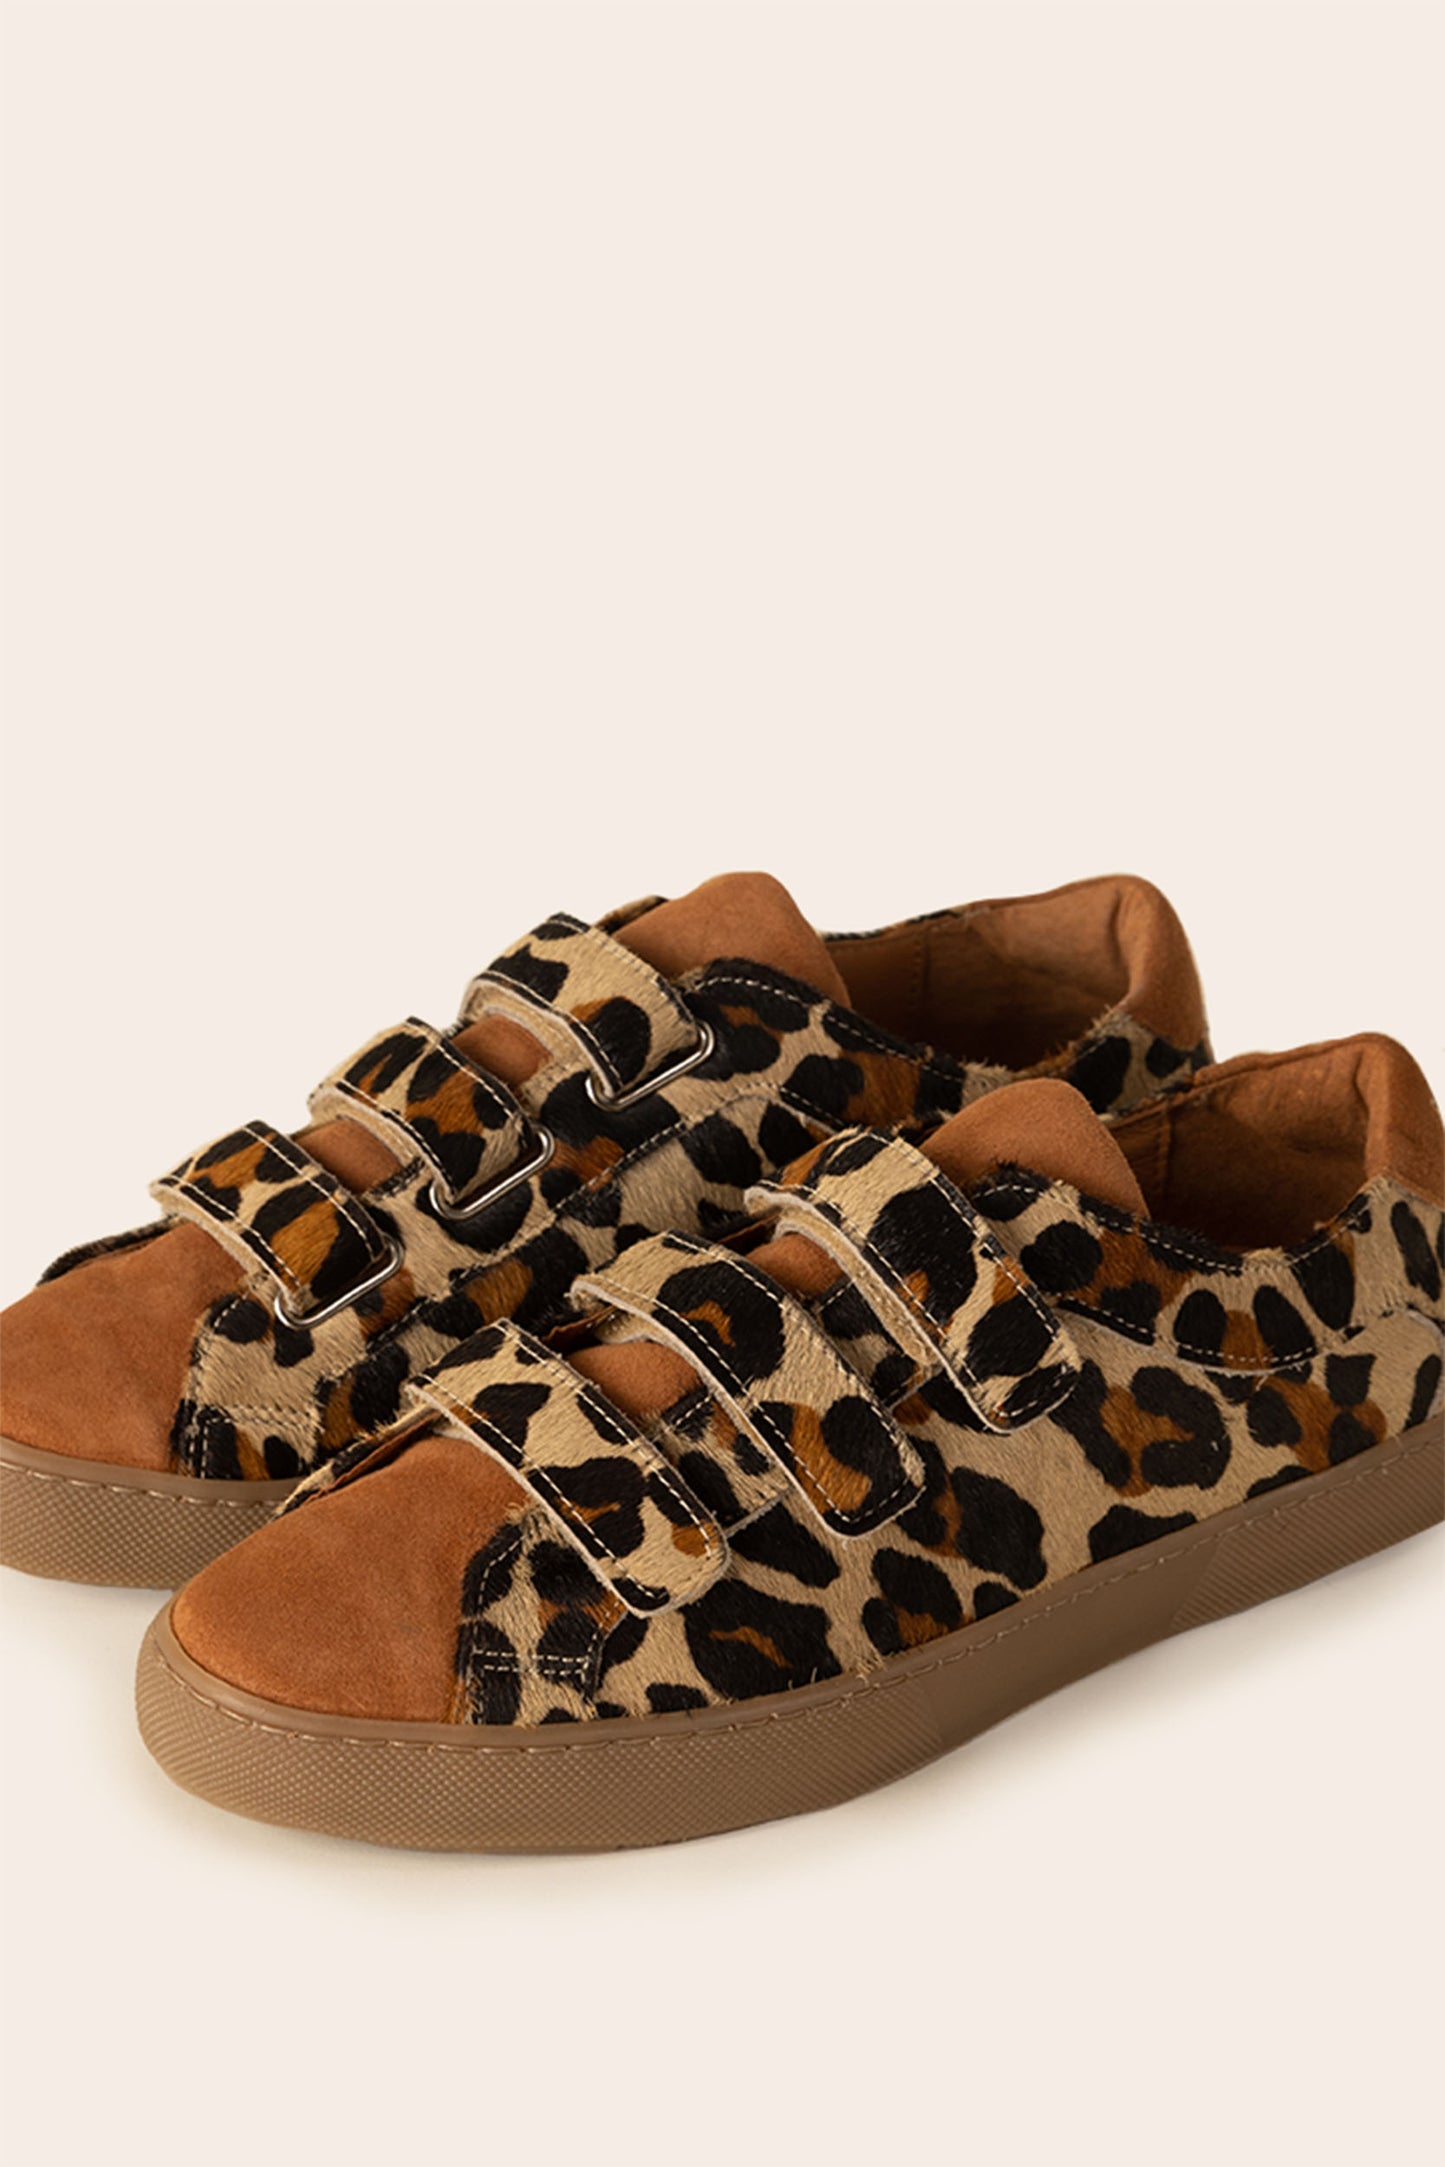 Honoré leopard sneakers